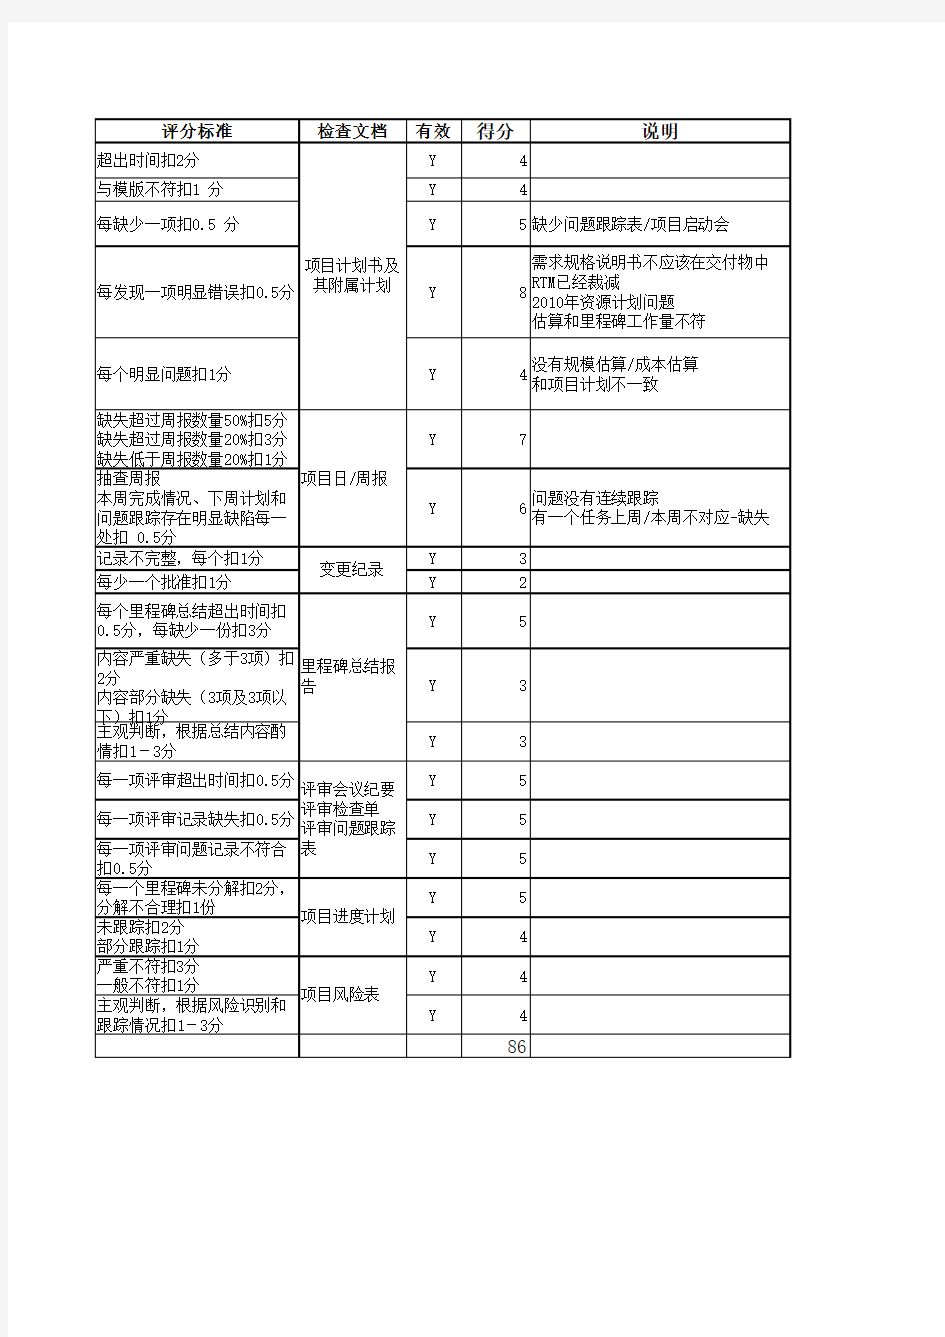 项目管理评估表